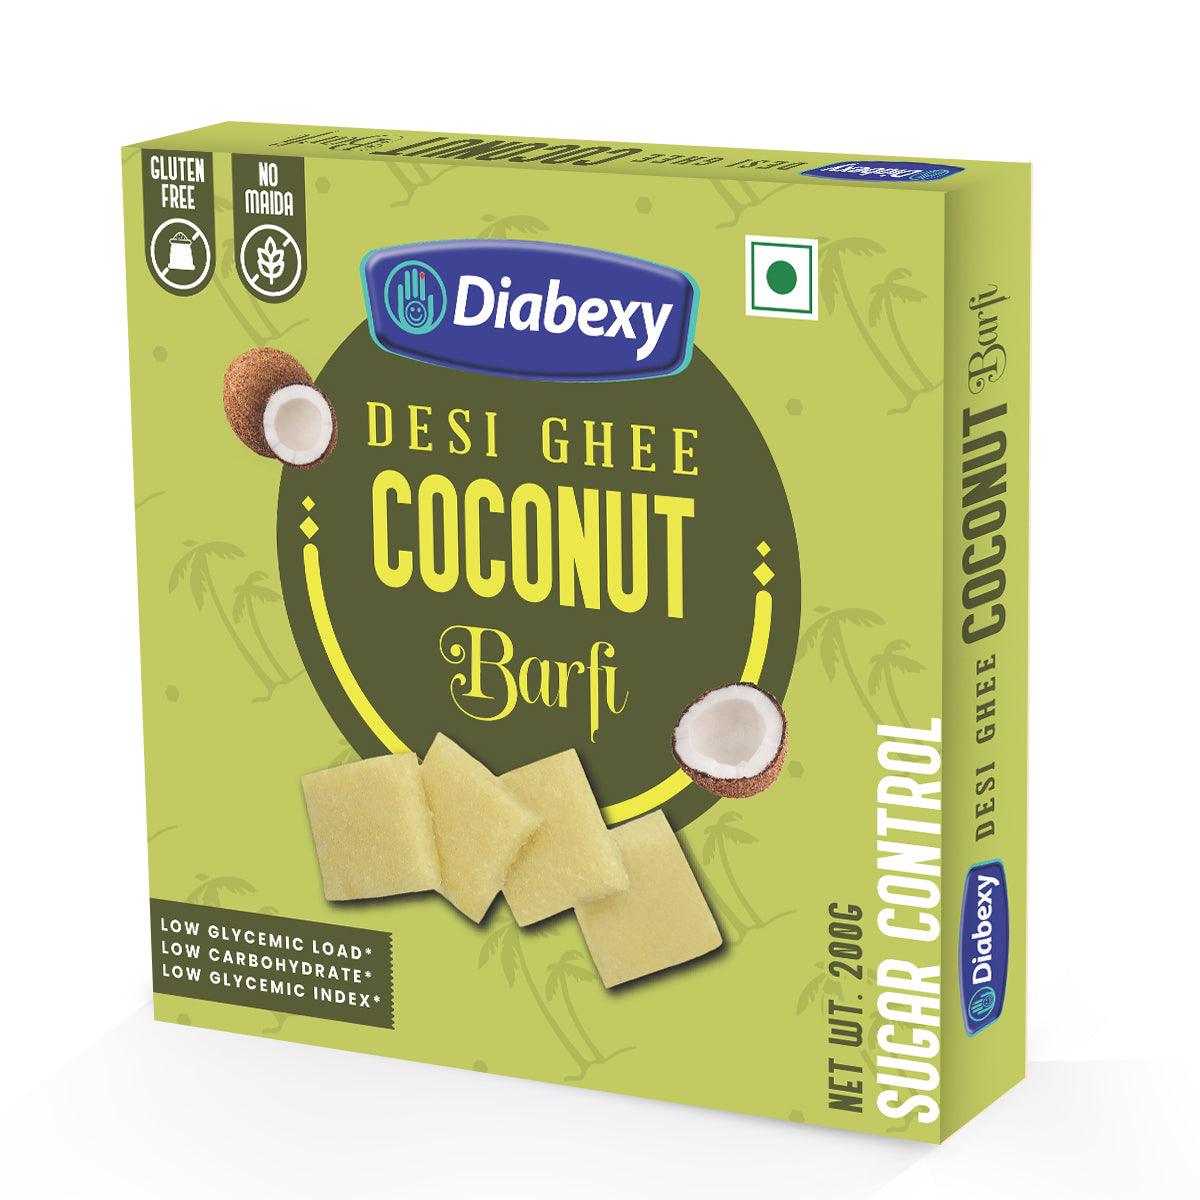 Diabexy Desi Ghee Sugar Free Coconut Barfi - 200g - Diabexy